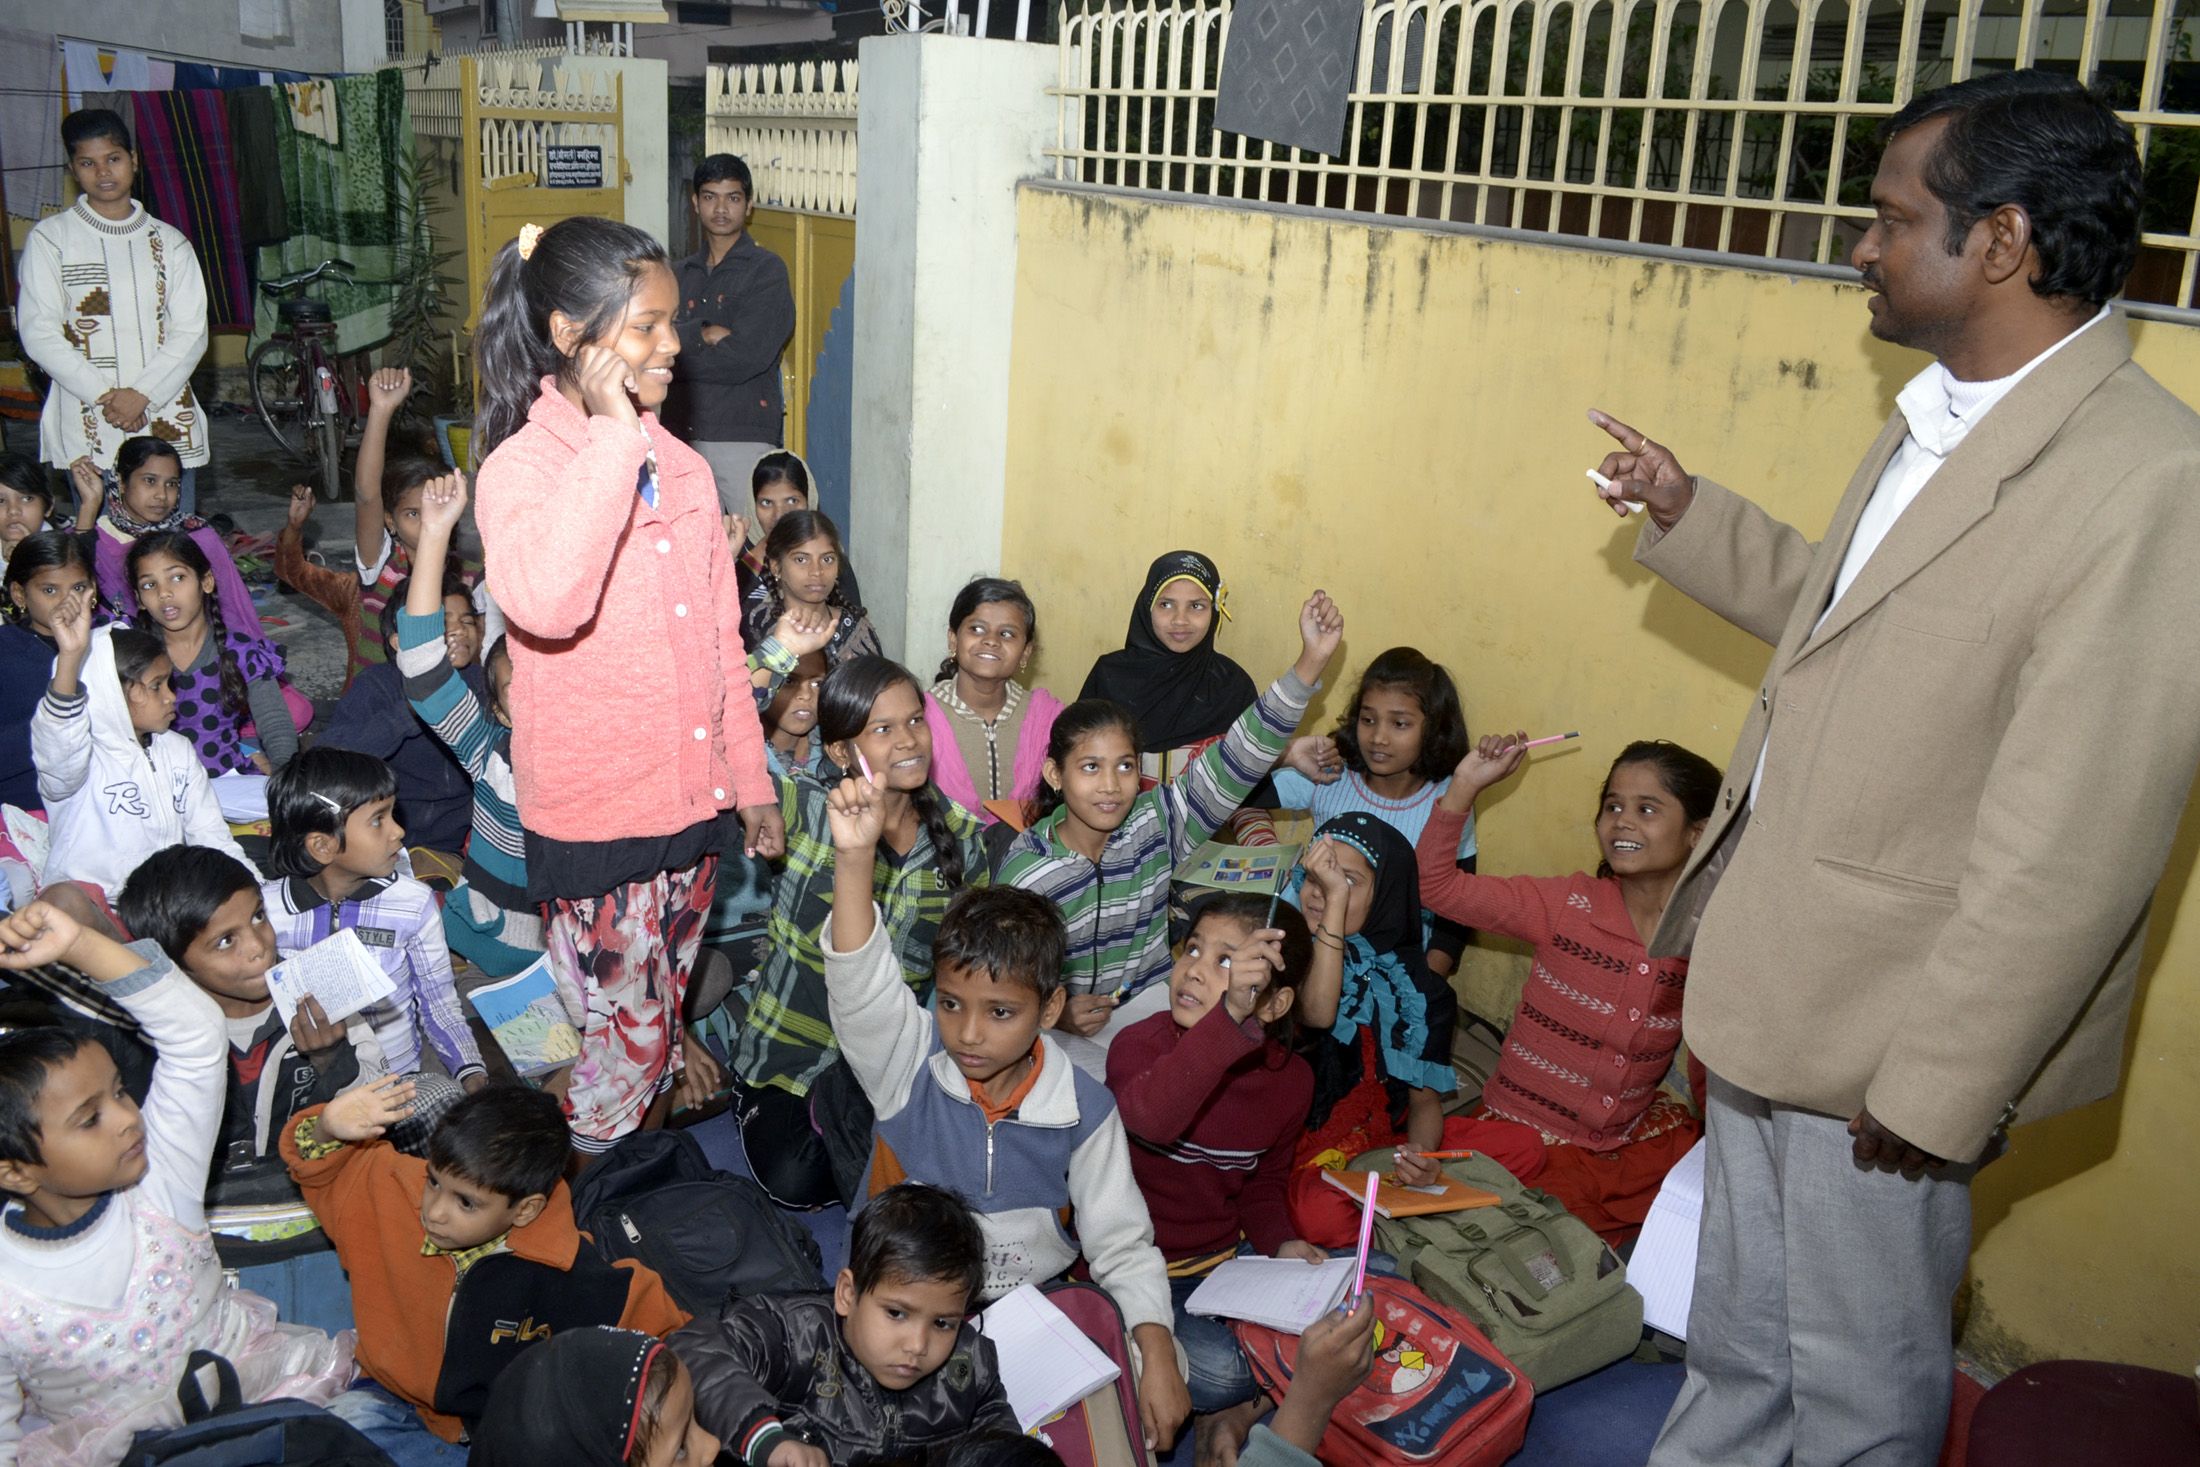 
कूड़ा बीनने वाले बच्चों के जीवन को शिक्षा से संवारने में जुटे हैं बनारस के प्रो. राजीव श्रीवास्तव